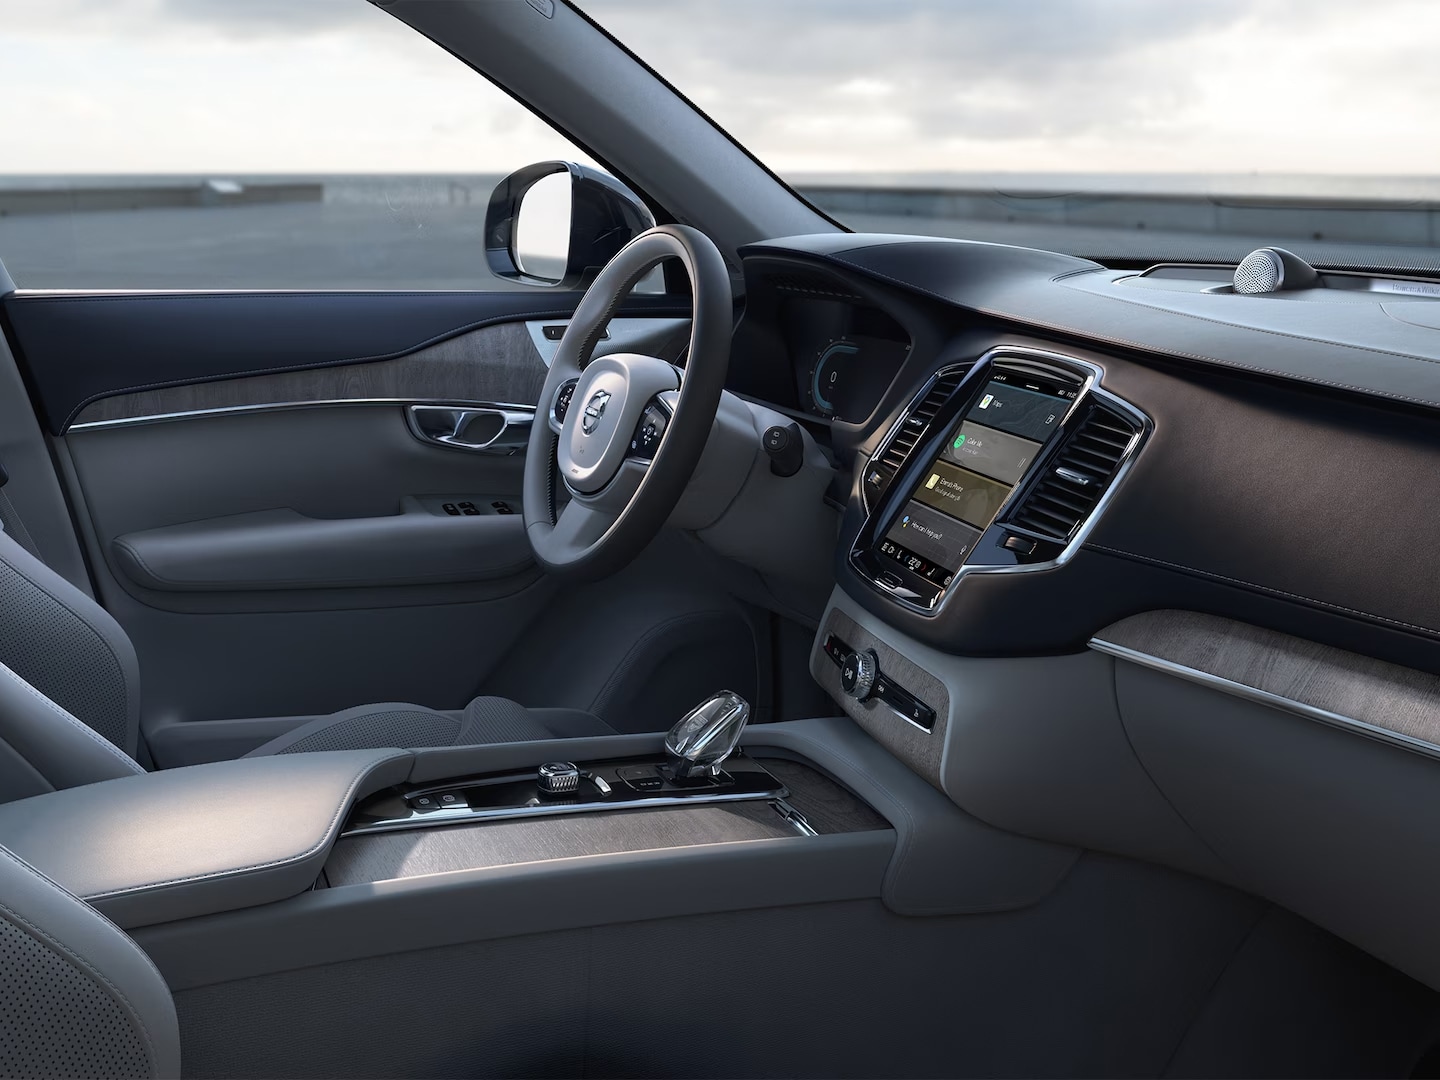 Кожаное водительское сиденье и наличник двери, рулевое колесо, центральная консоль и сенсорный экран информационно-развлекательной системы в мягком гибриде XC90.